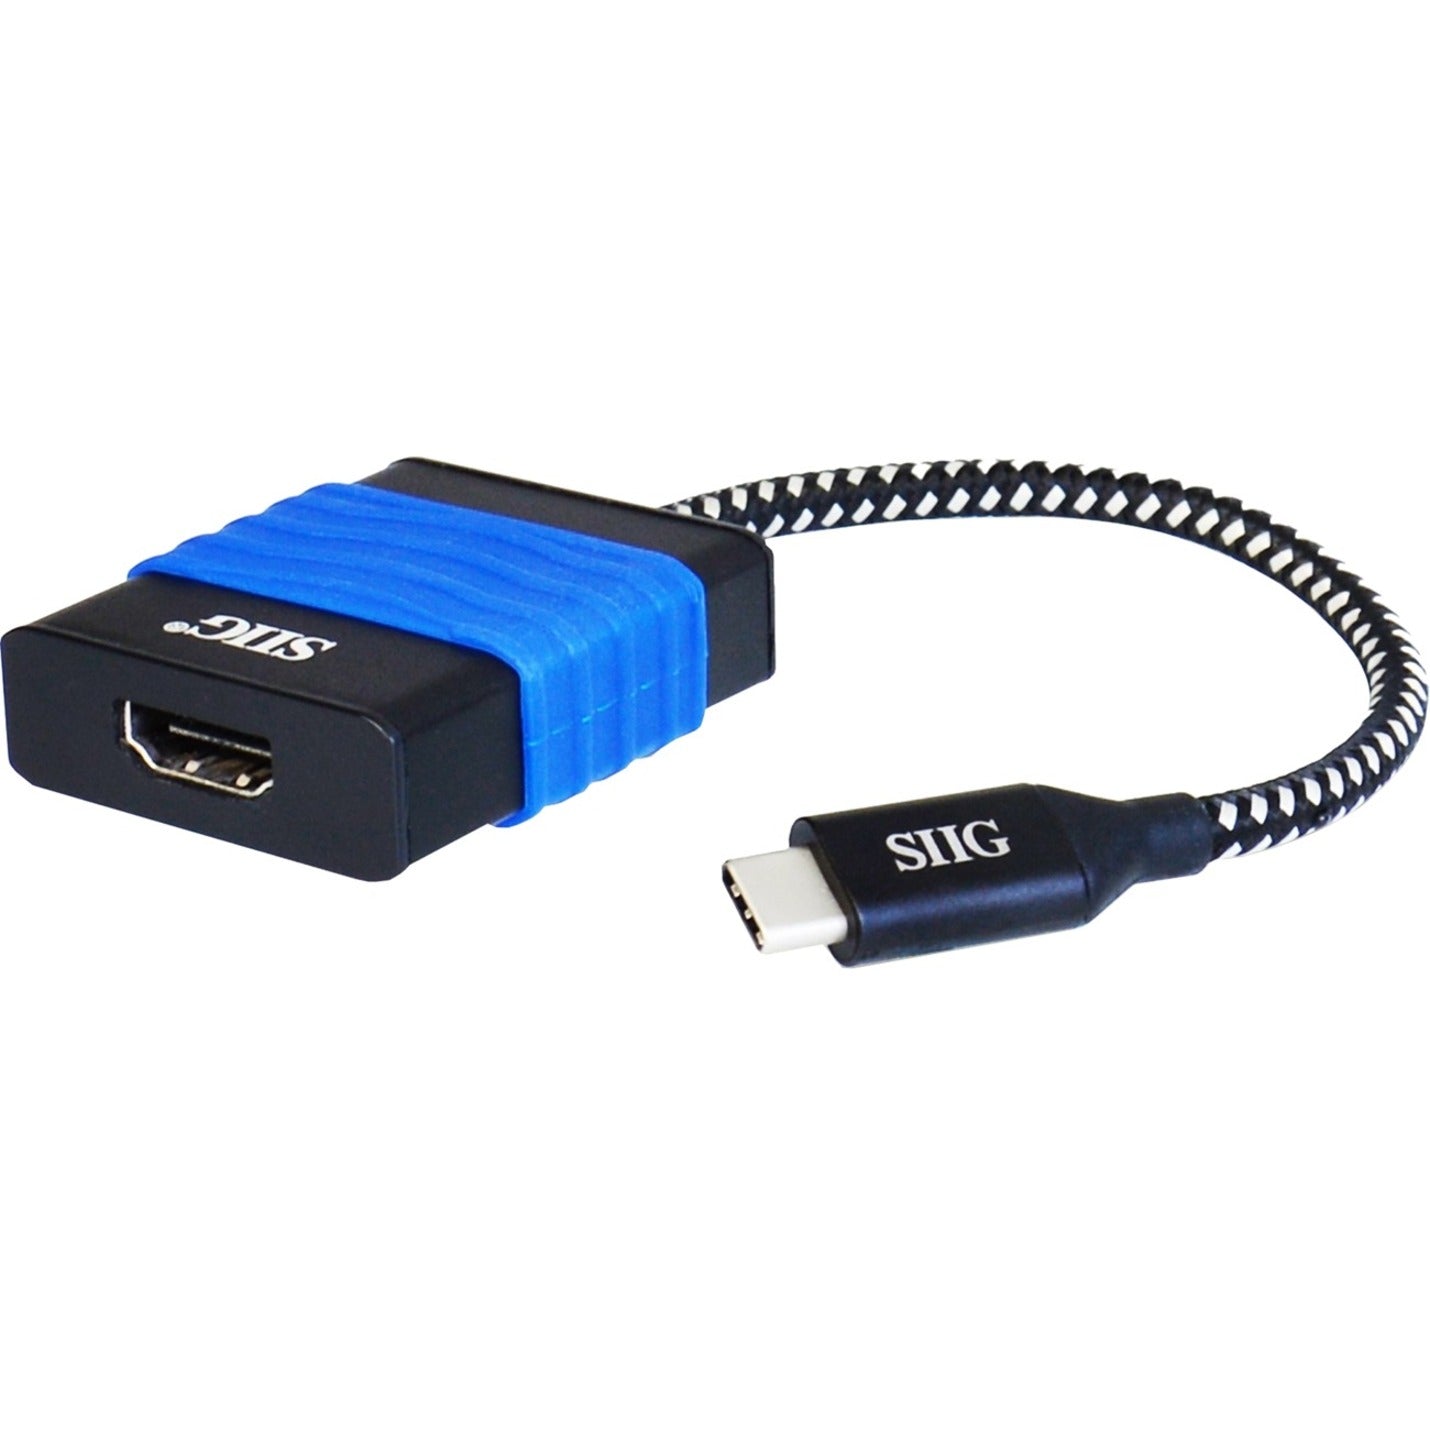 SIIG CB-TC0014-S2 USB Type-C to HDMI Cable Adapter - 4Kx2K Connect Your PC to a 4K Display SIIG CB-TC0014-S2 Adaptateur de câble USB Type-C vers HDMI - 4Kx2K Connectez votre PC à un écran 4K